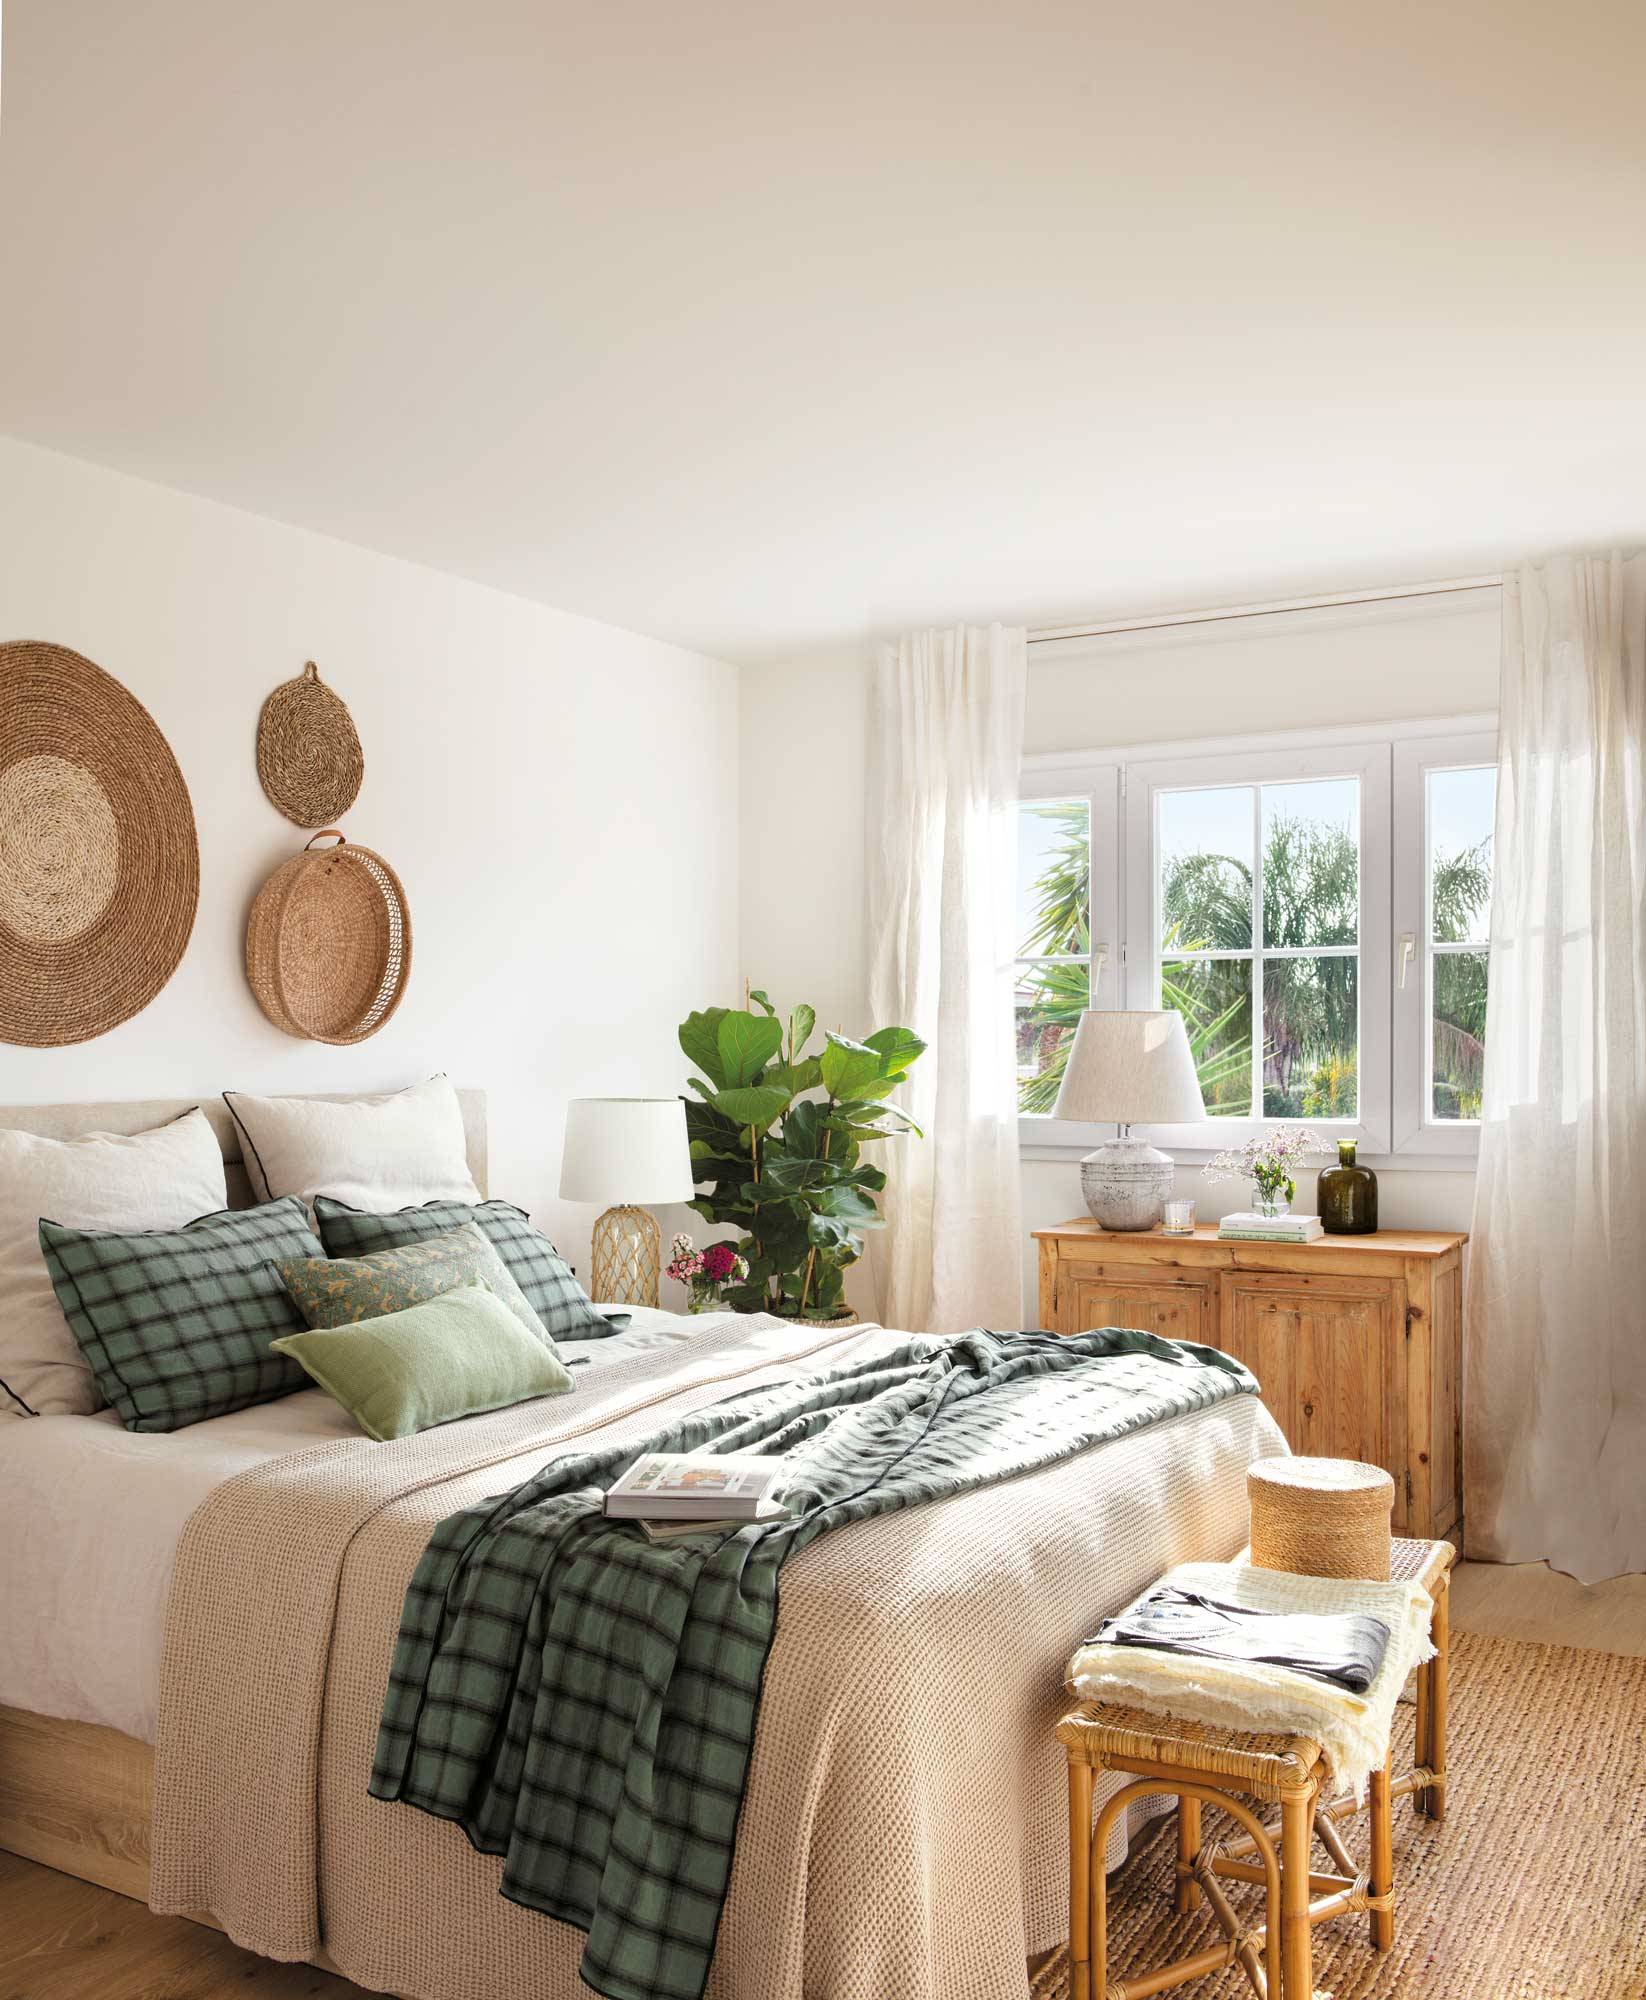 Dormitorio con decoración de fibras naturales y un ficus lyrata en la esquina. 